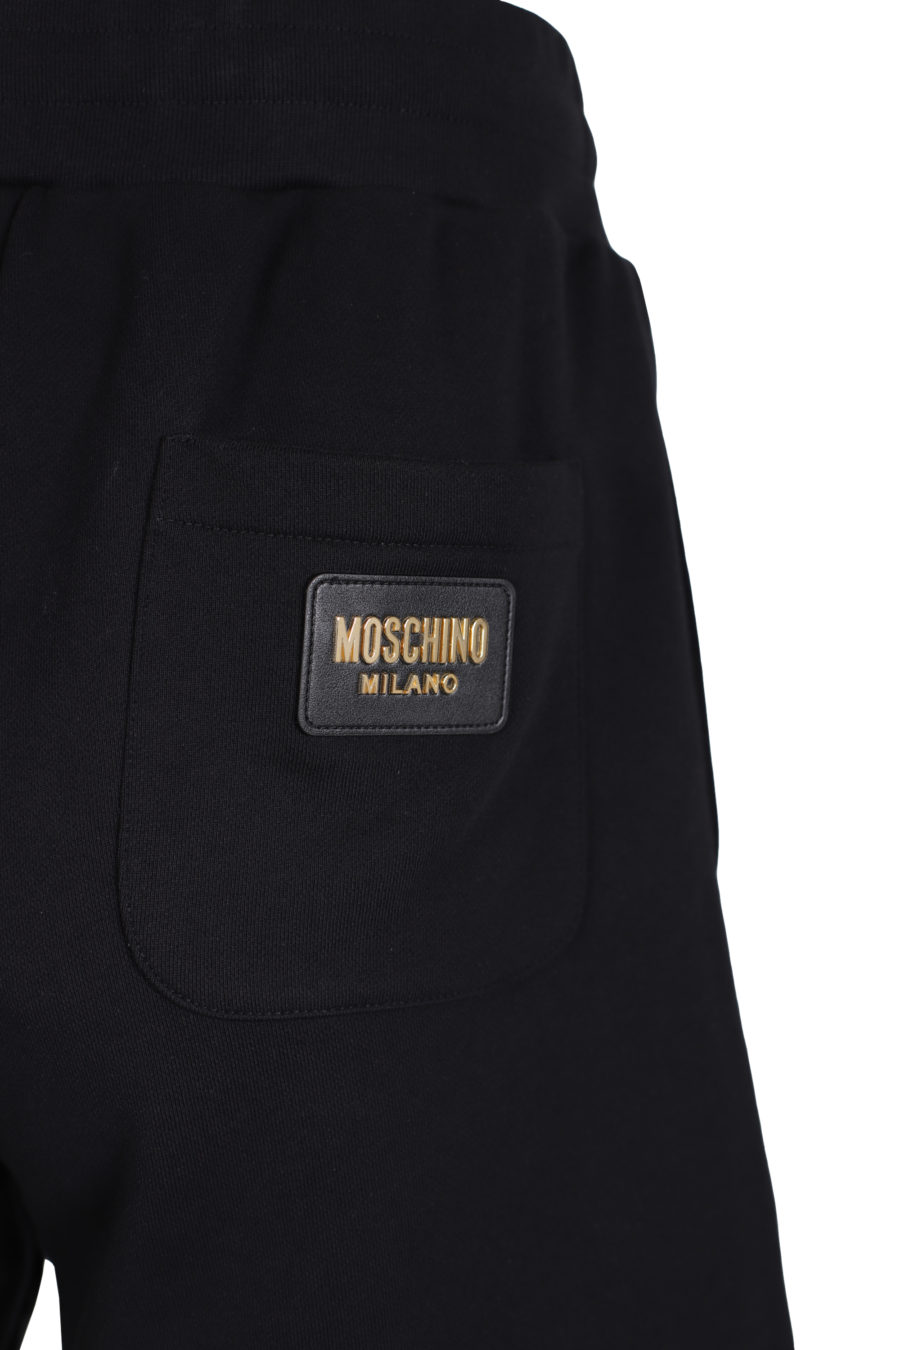 Pantalón negro corto logo en oro parte trasera - IMG 1412